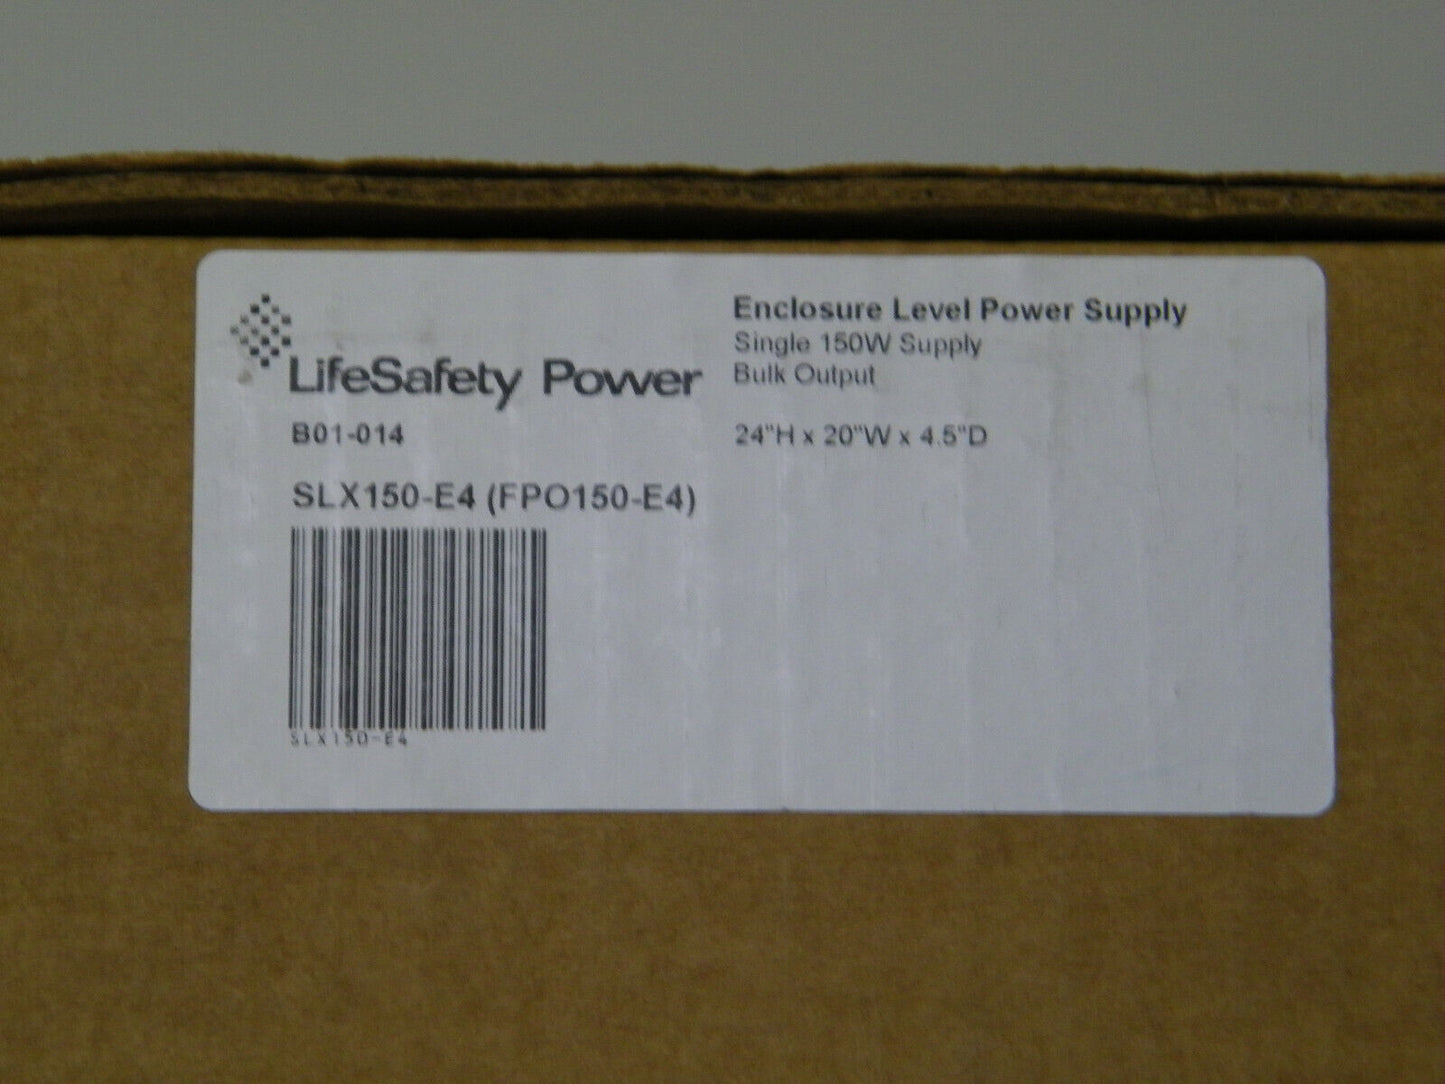 LIFESAFETY POWER FPO150-E4 / SLX150-E4 / B01-014